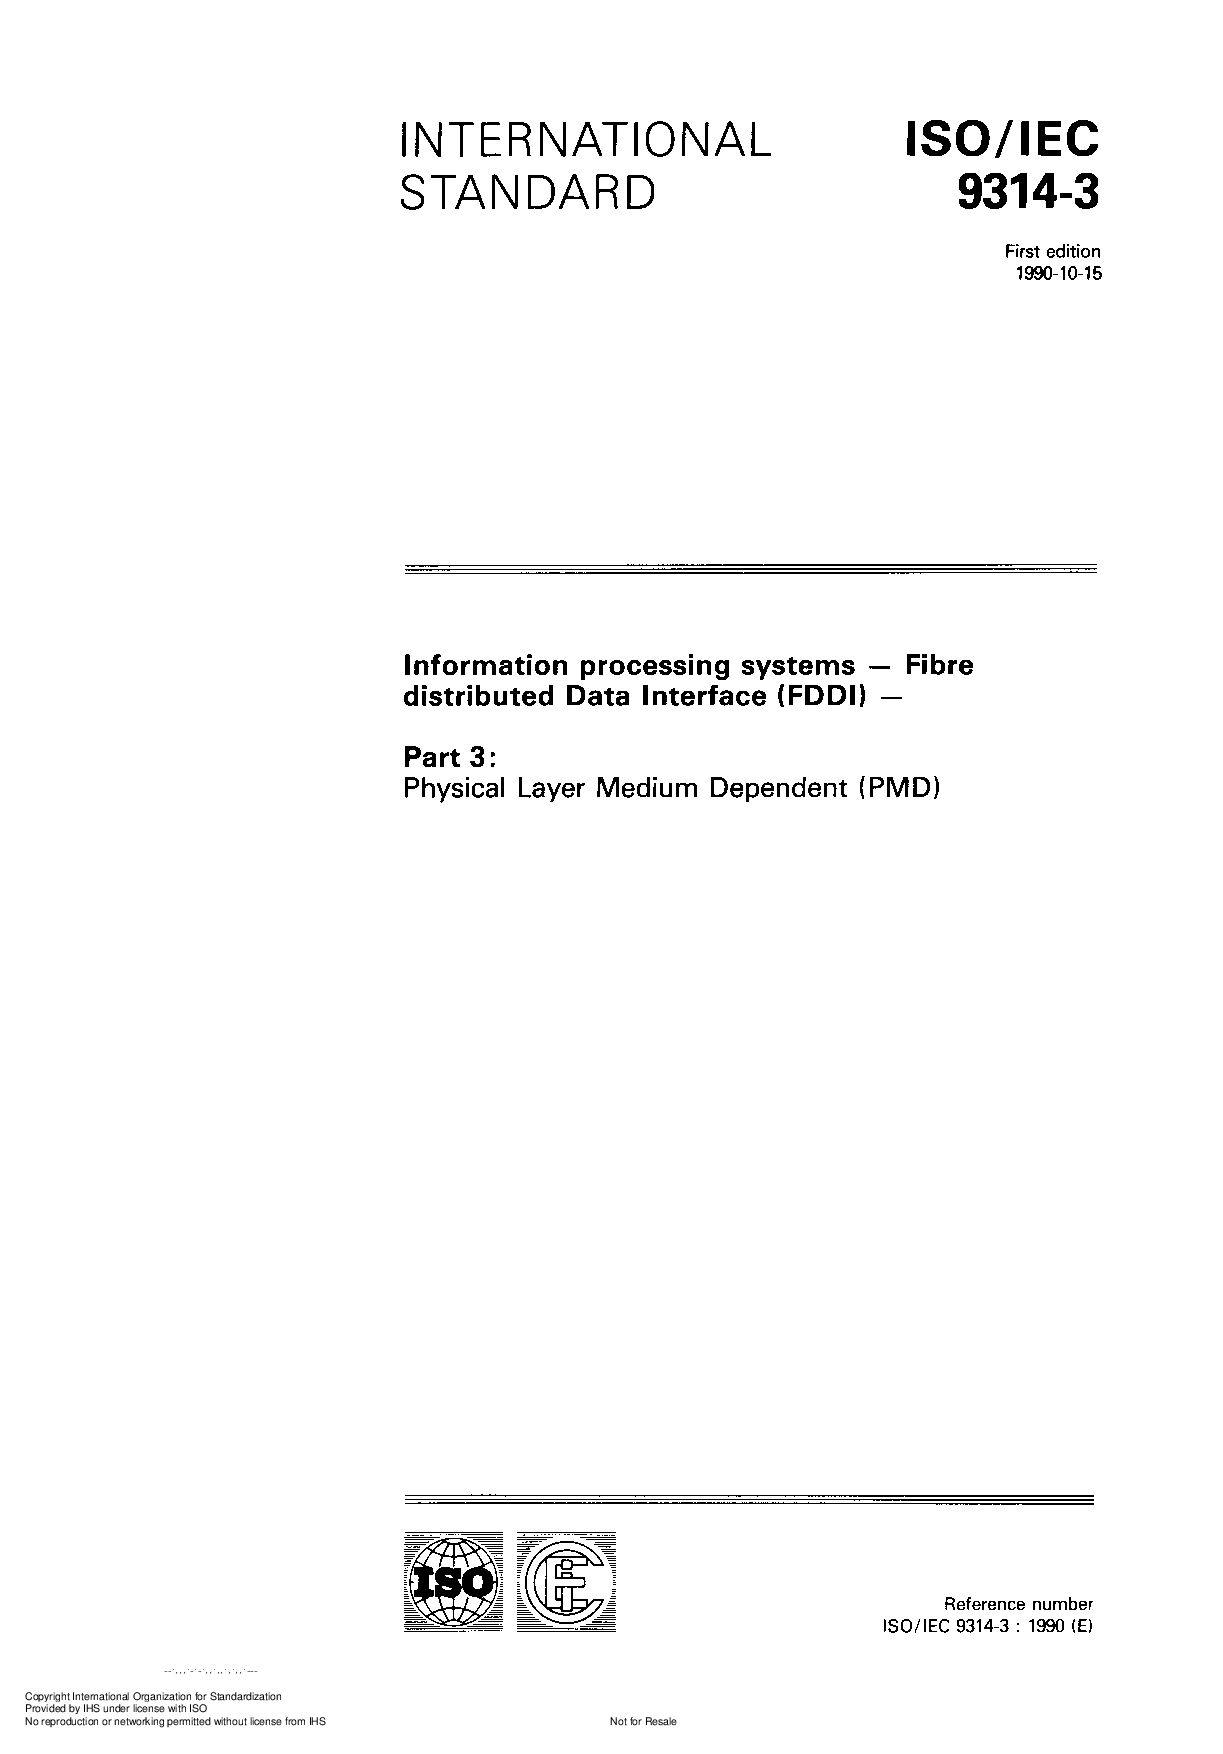 ISO/IEC 9314-3:1990封面图